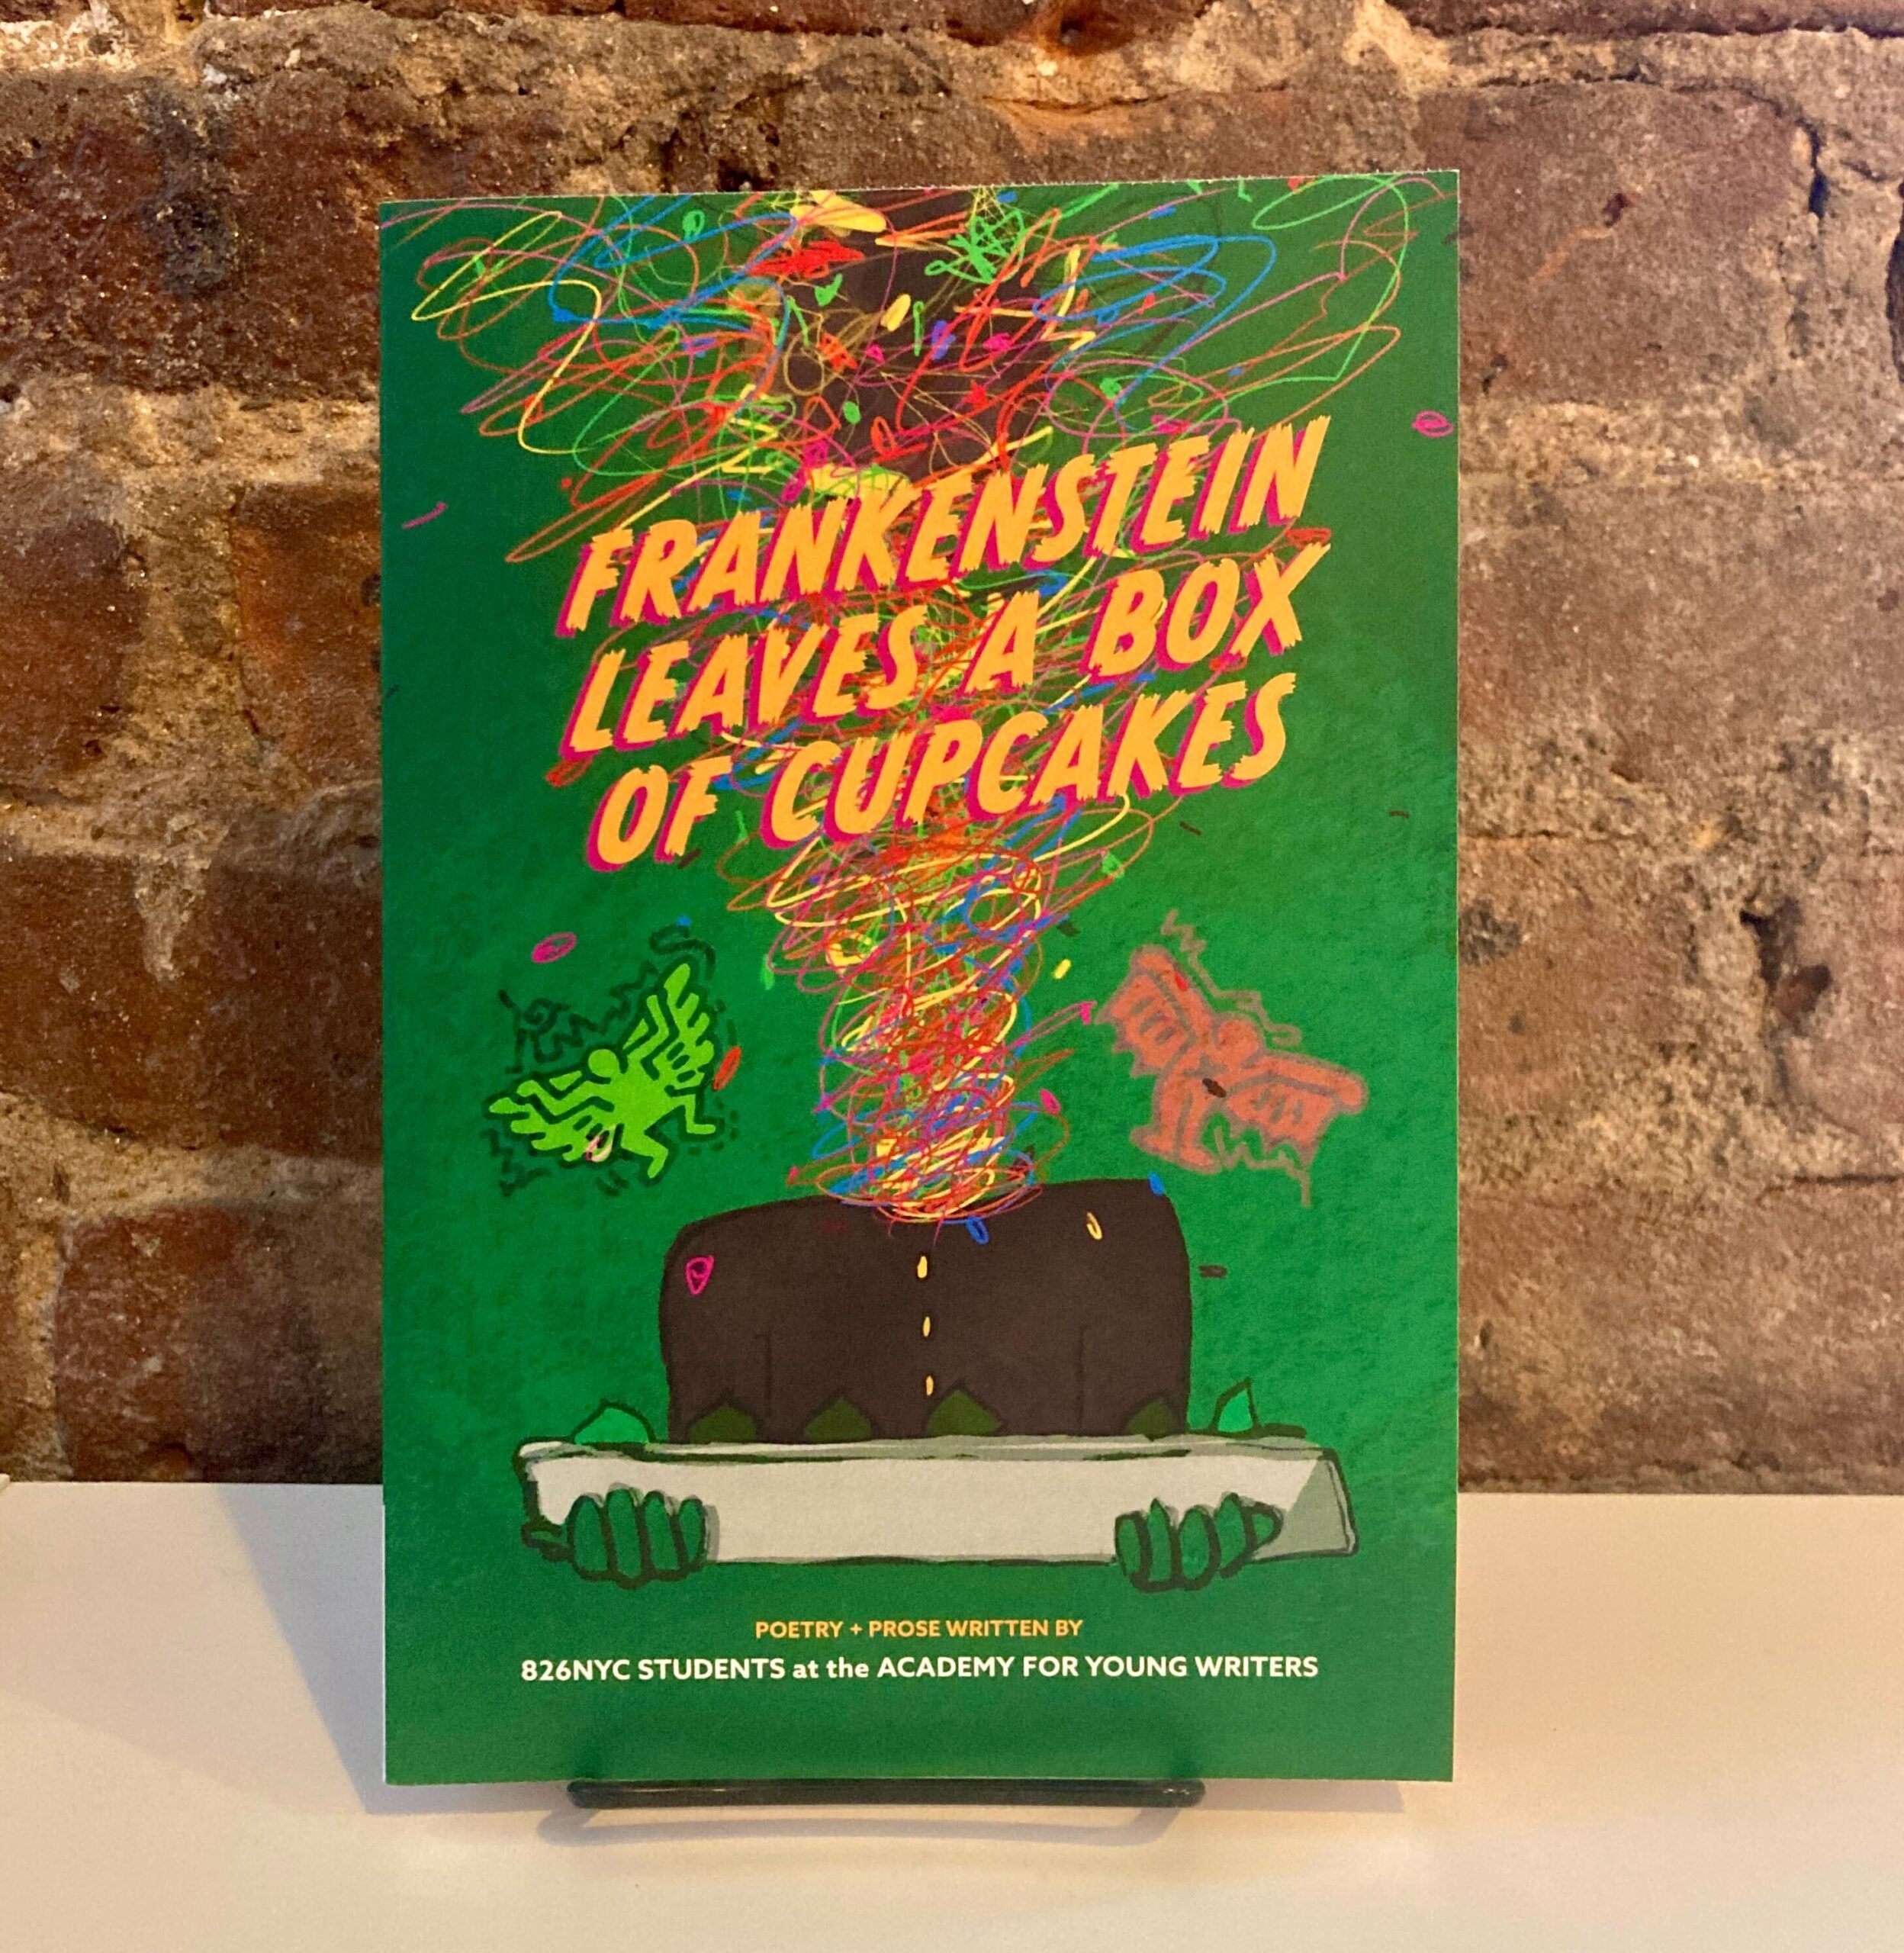 Portada de Frankenstein Leaves a Box of Cupcakes, un libro de bolsillo. El título está en letras naranjas vibrantes sobre un fondo verde, con una figura cuya cabeza es un garabato gigante que sostiene una bandeja.